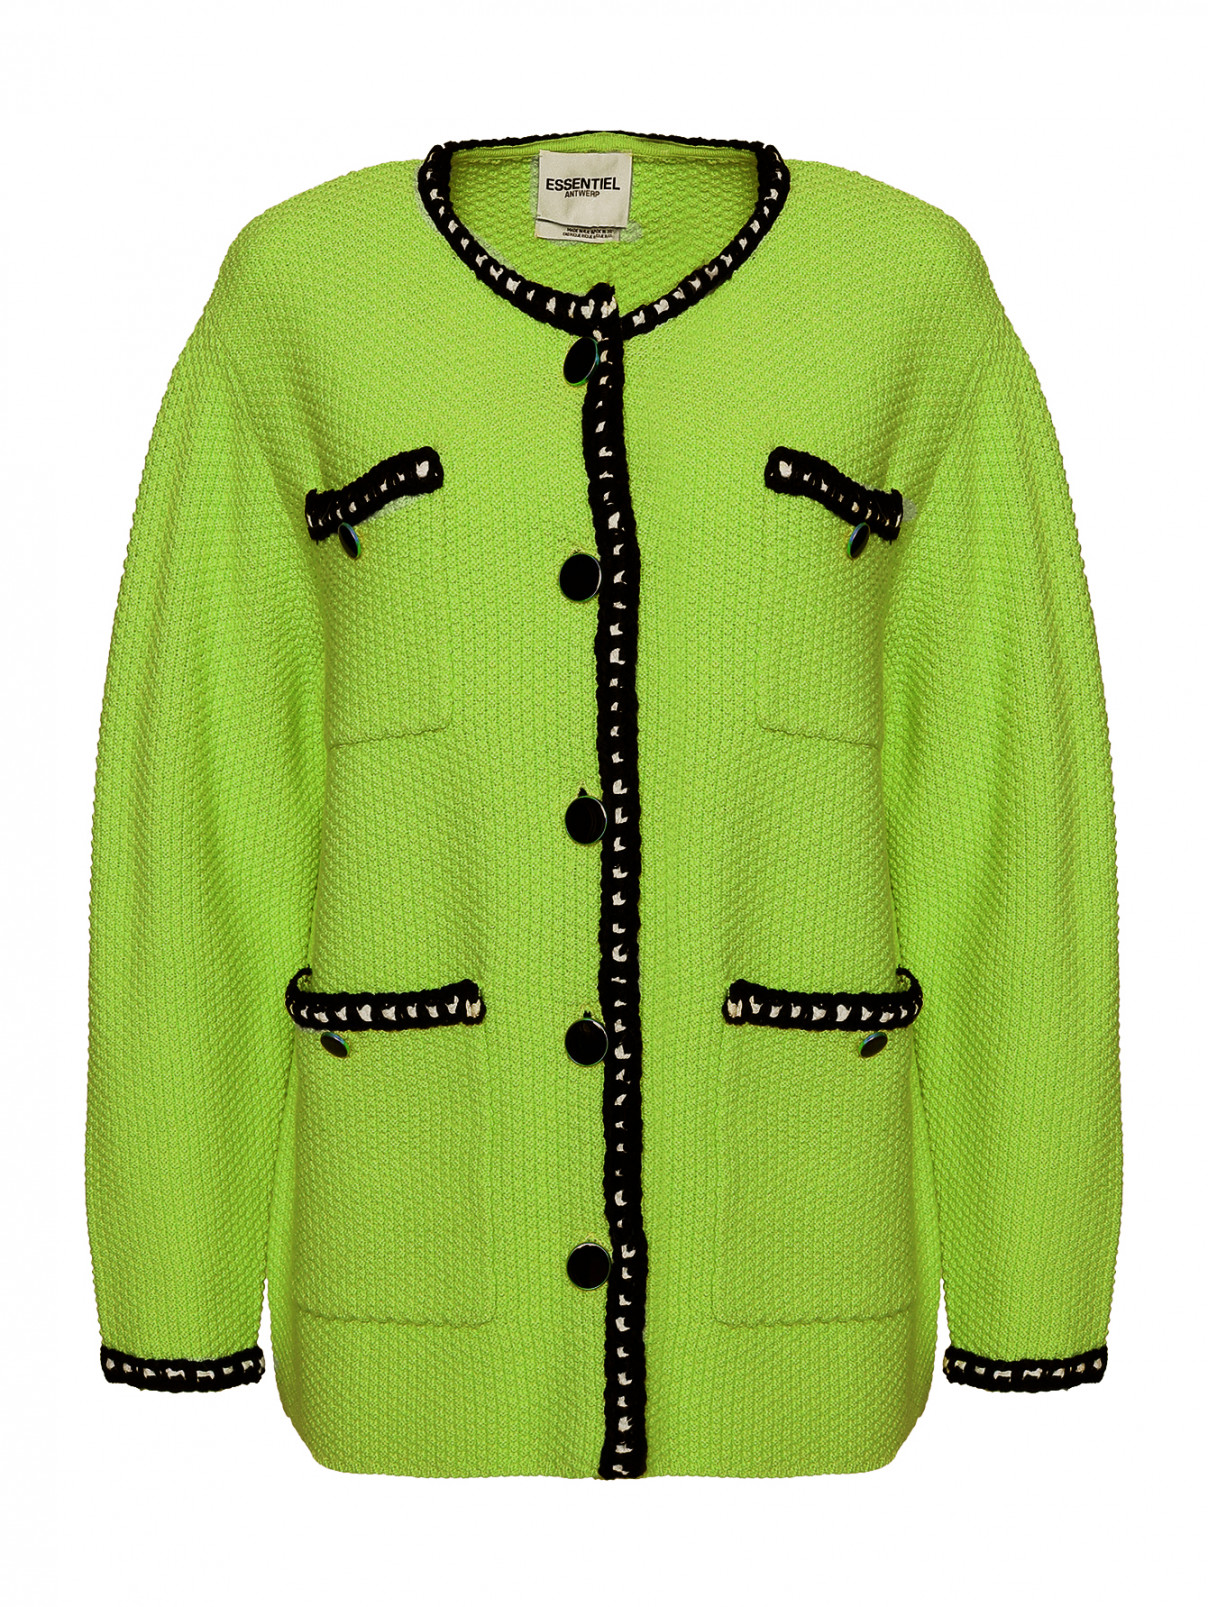 Кардиган из шерсти и хлопка с карманами Essentiel Antwerp  –  Общий вид  – Цвет:  Зеленый